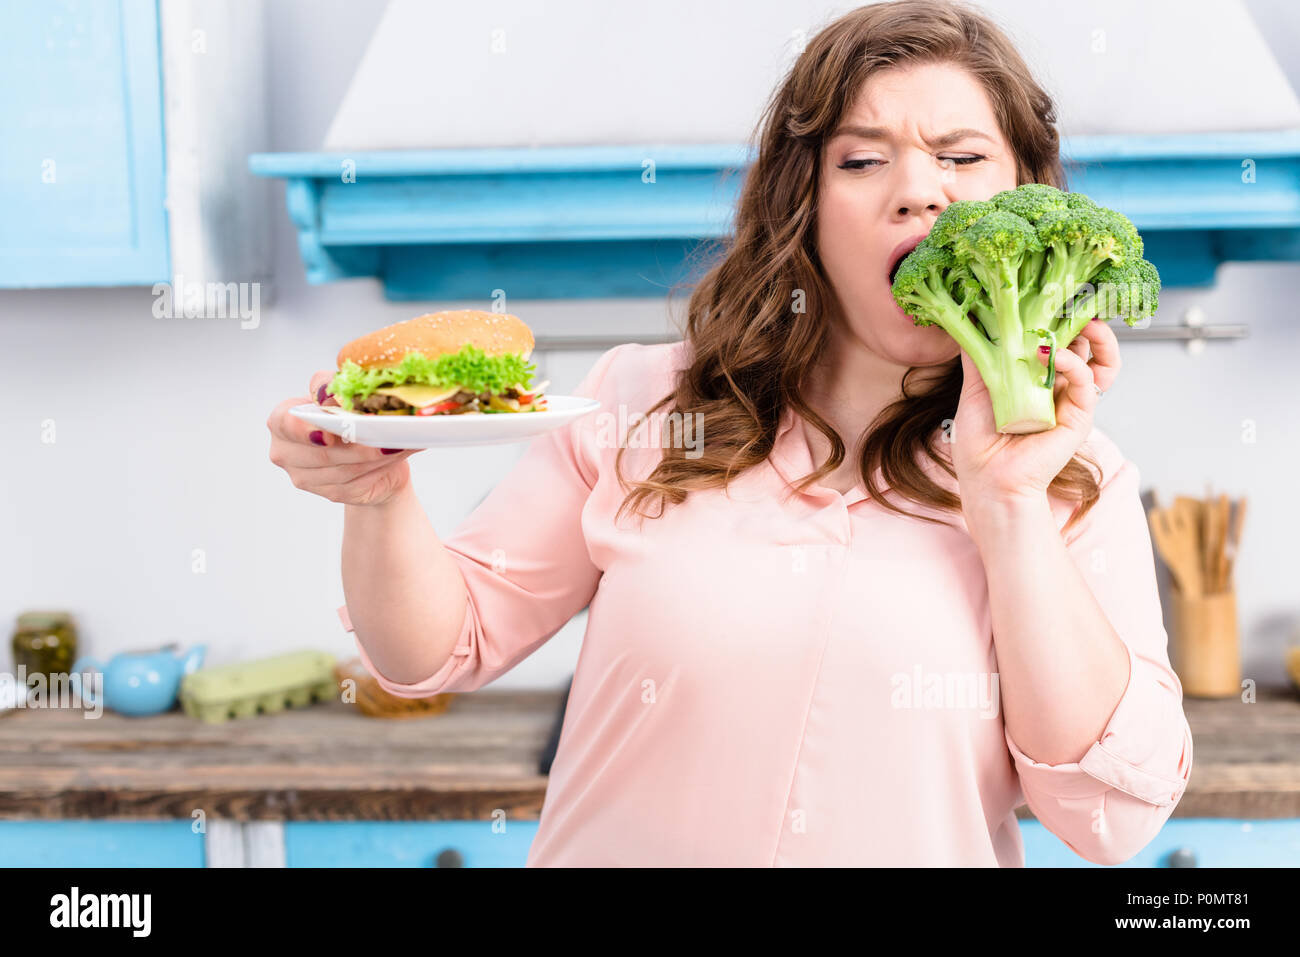 Ritratto di donna sovrappeso con burger mordere di broccoli freschi in mani in cucina a casa, mangiare sano concetto Foto Stock